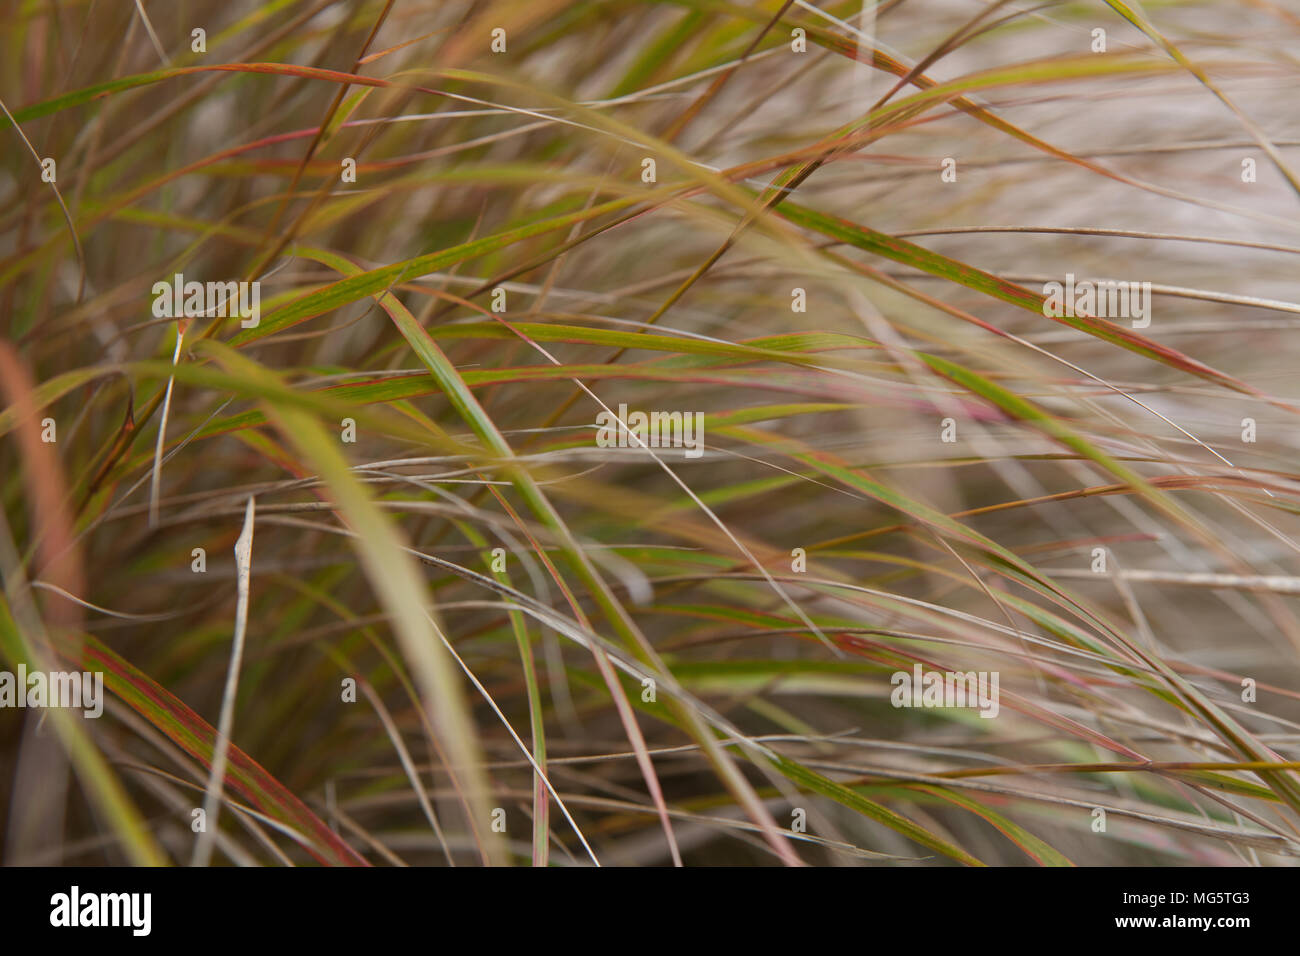 Un close up detail shot of ornamental grass Stipa gigantea, également connu sous le nom de l'herbe d'avoine d'or Banque D'Images